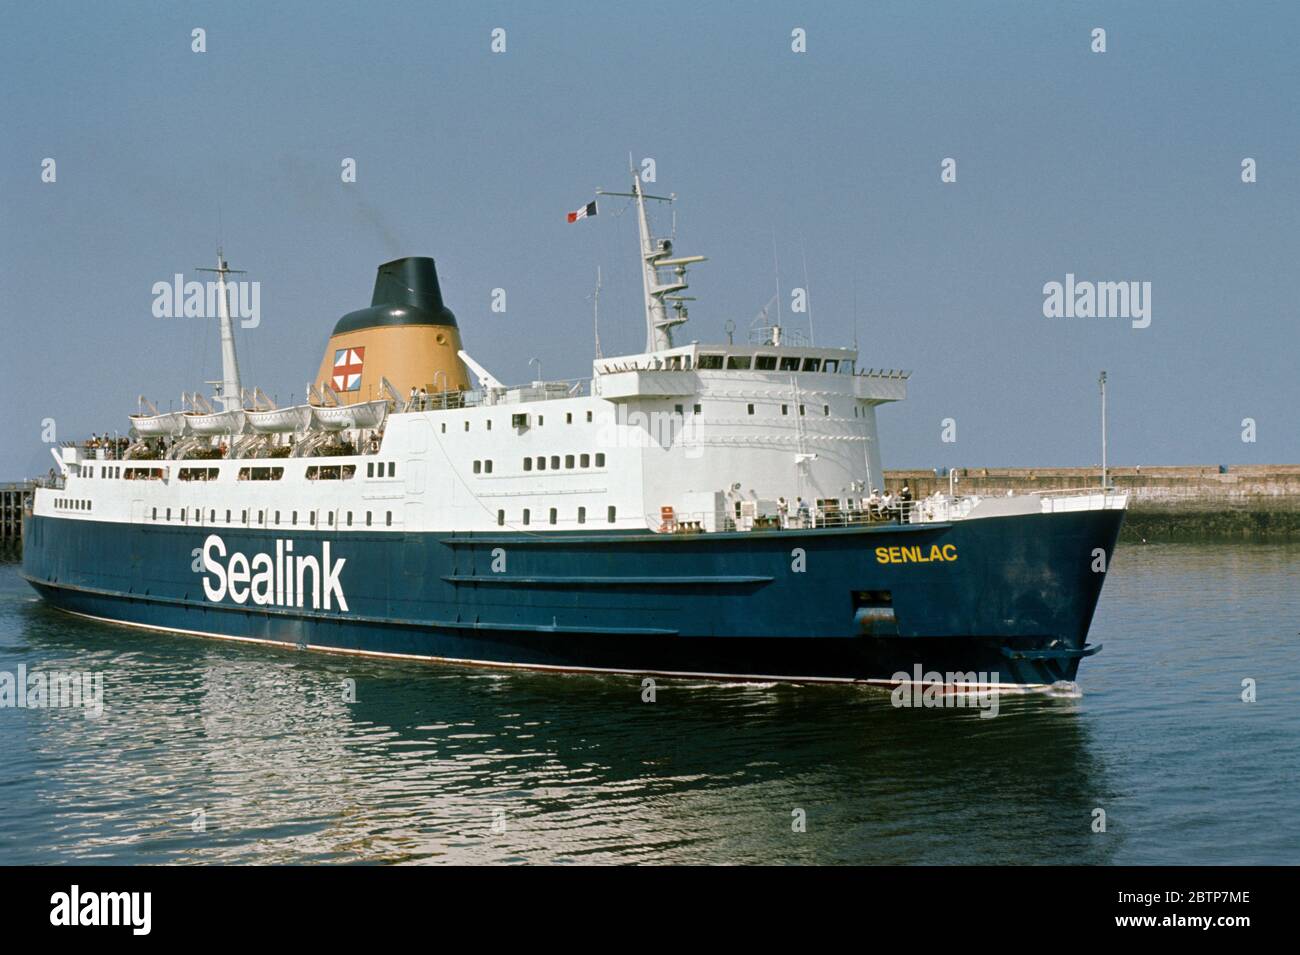 Il traghetto Sealink prende il nome dal Senlac che corre tra Newhaven e Dieppe qui nel suo primo anno di servizio nel 1973 arrivando nel porto di Newhaven Foto Stock